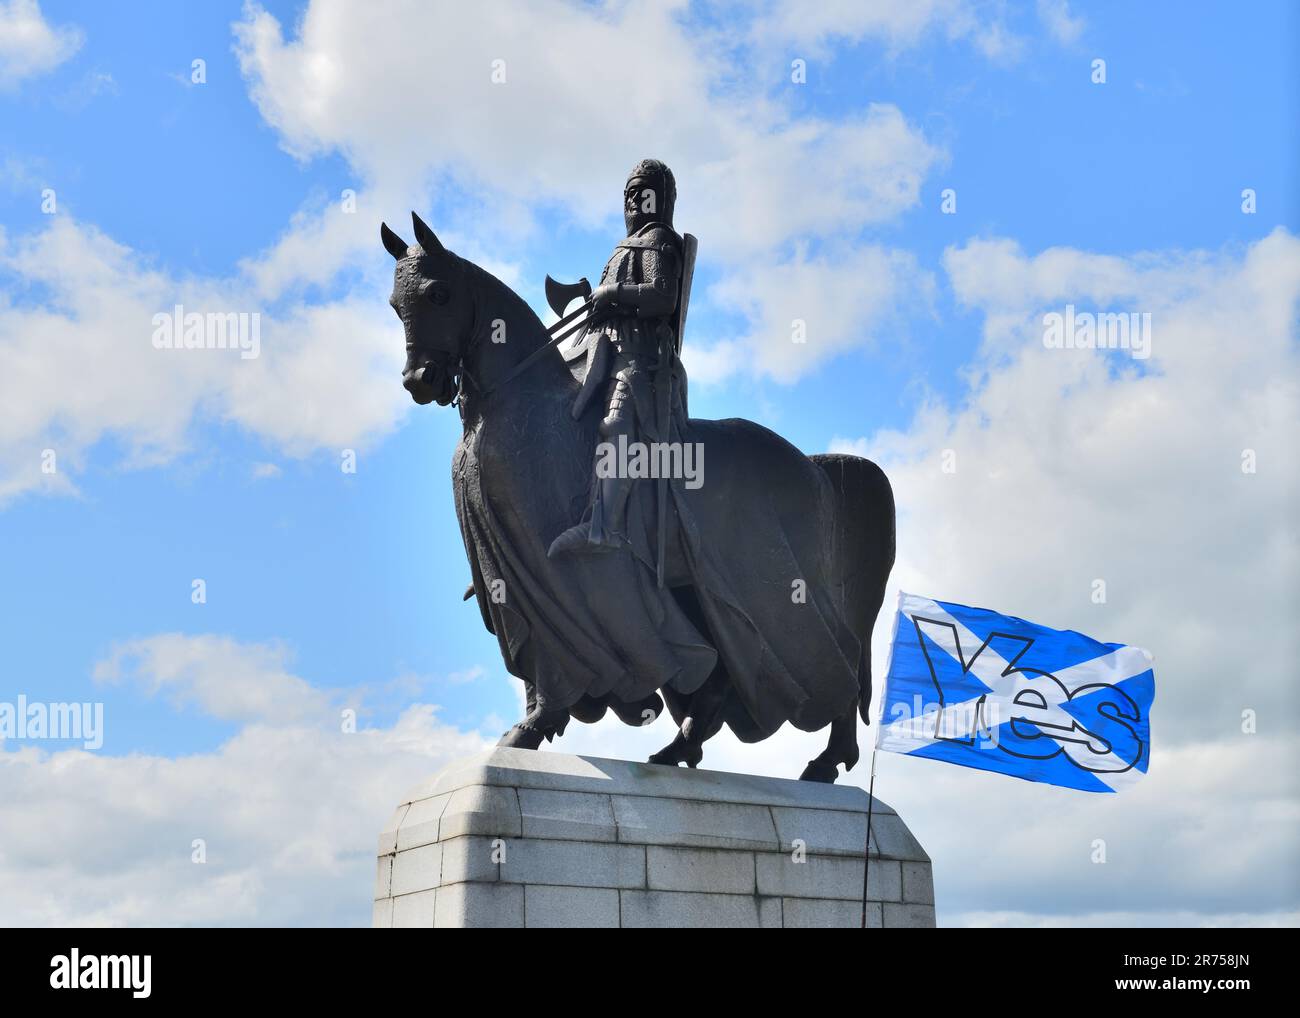 La statue de Robert The Bruce au mémorial de Bannockburn à Stirling, en Écosse, avec drapeau de l'indépendance écossaise. Banque D'Images